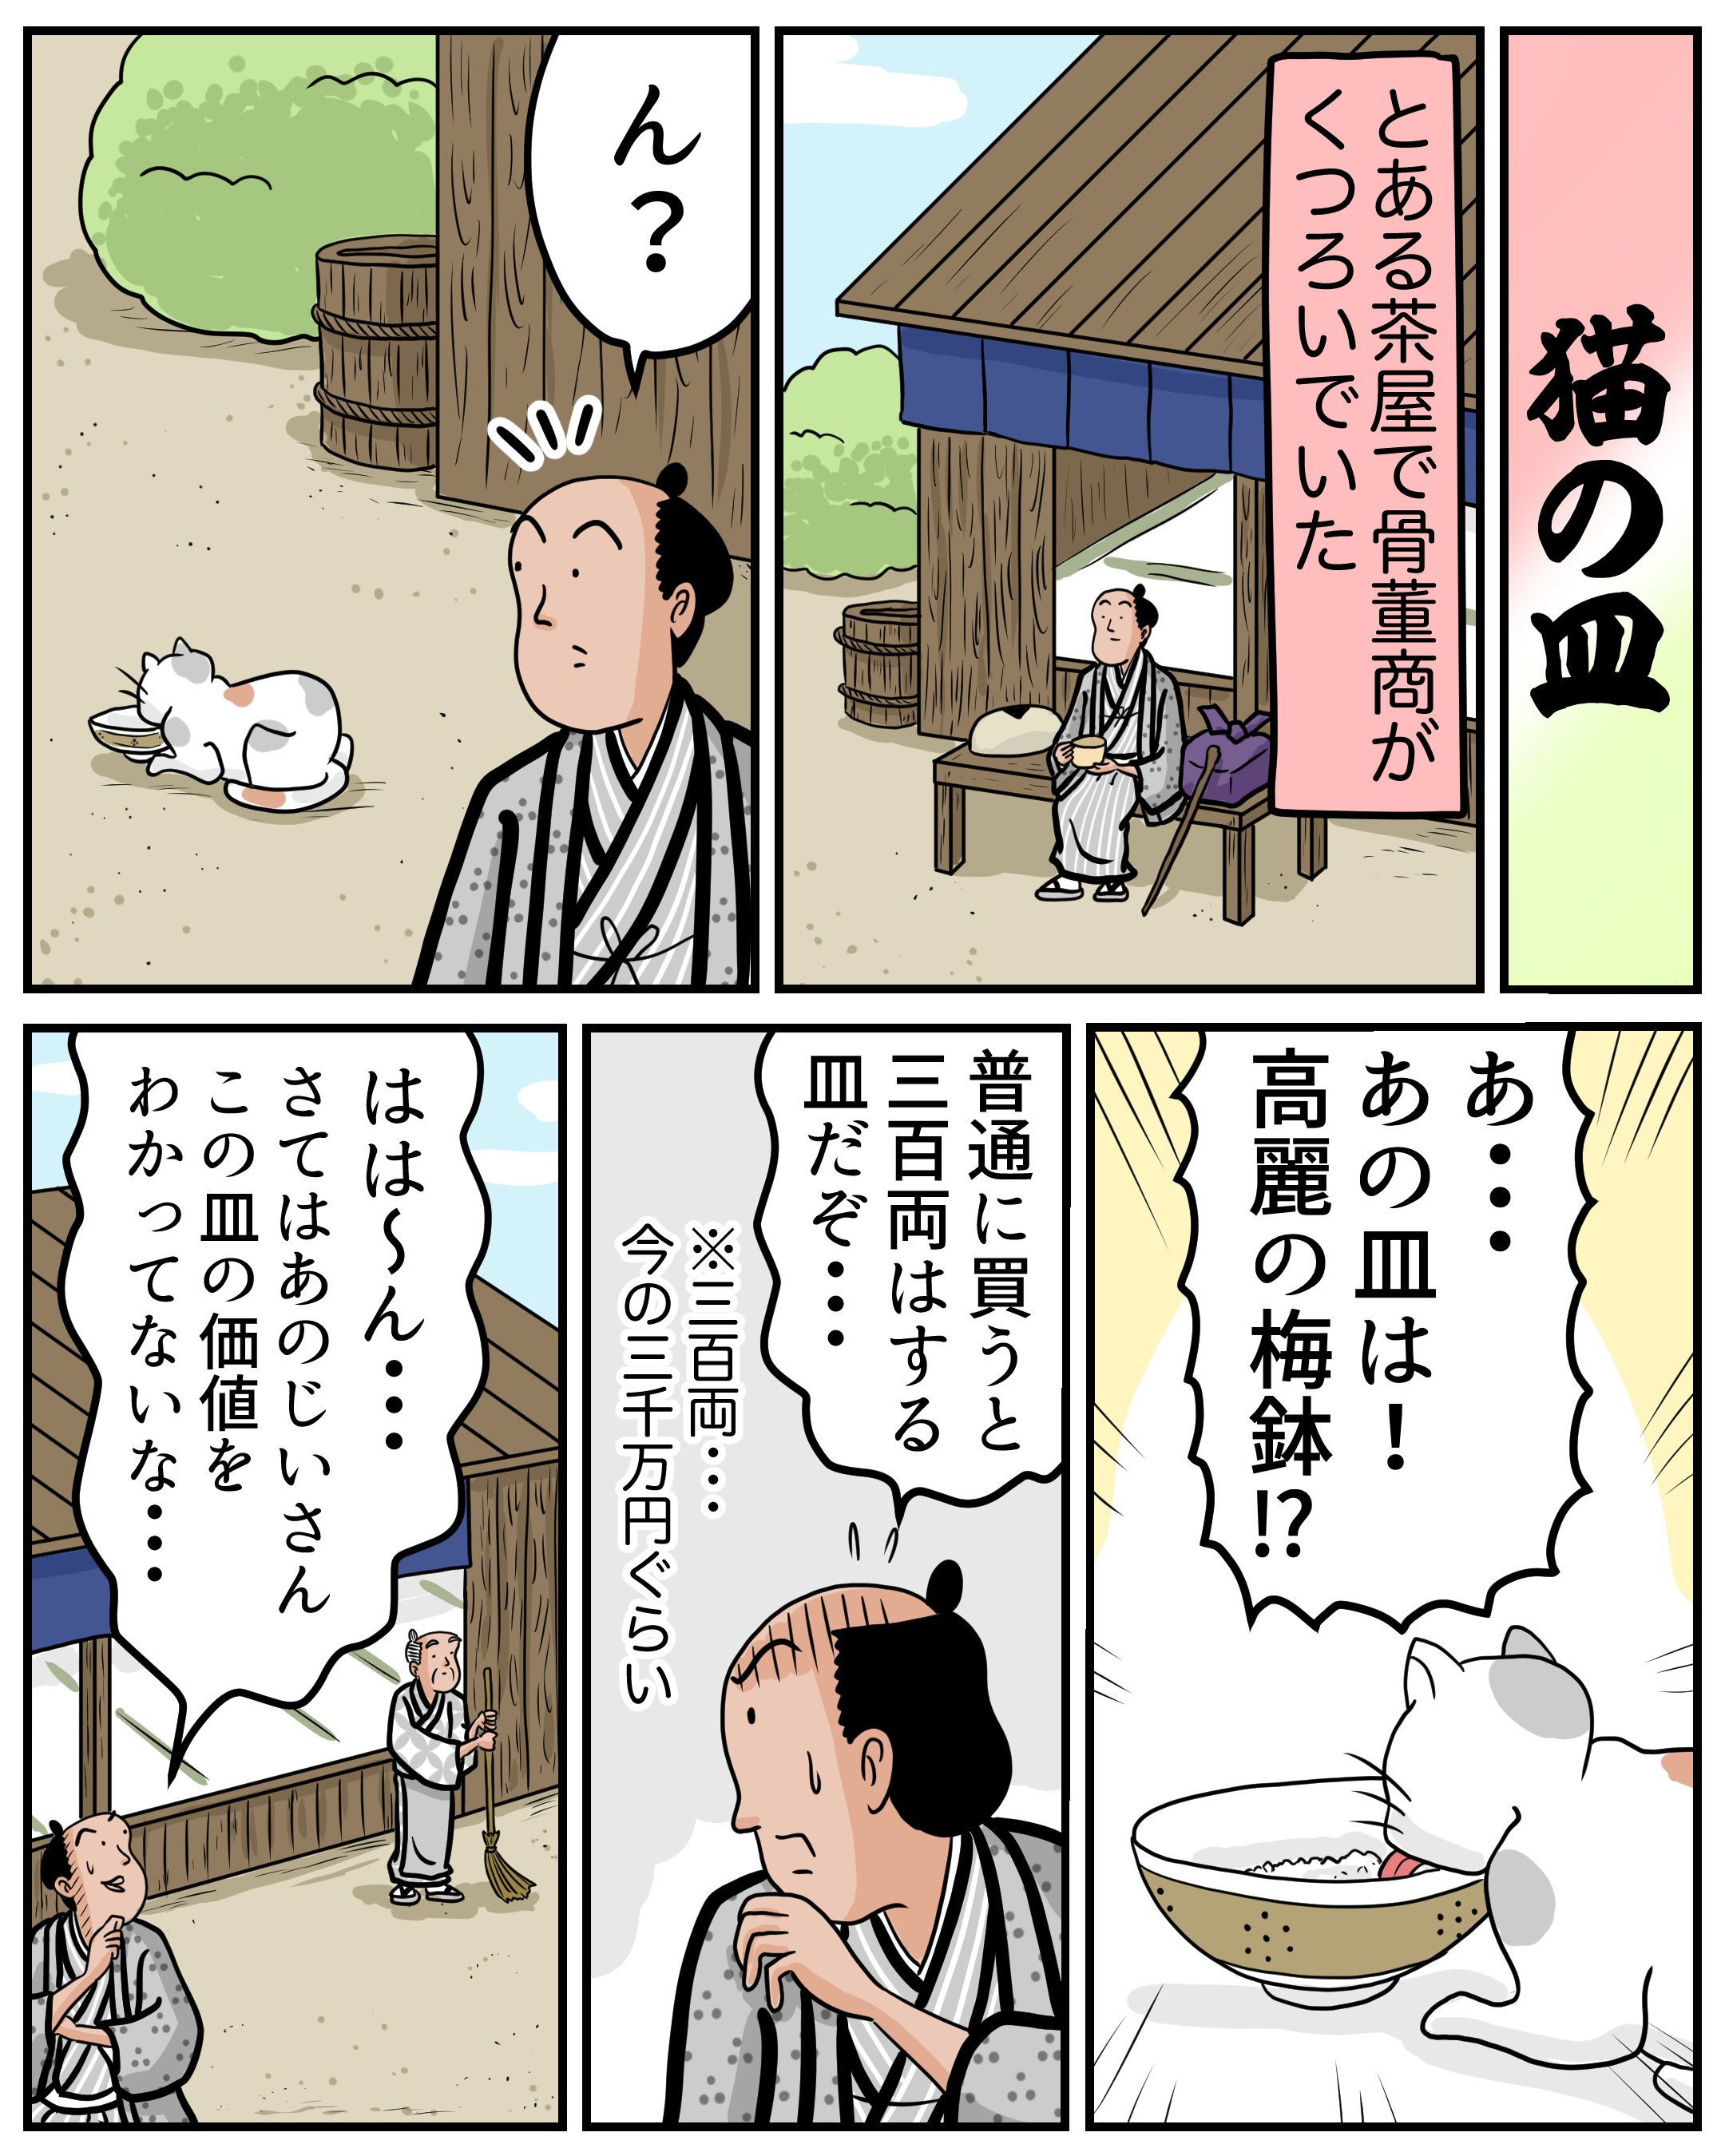 １分で読める マンガで落語 猫の皿 山田全自動の漫画 Note